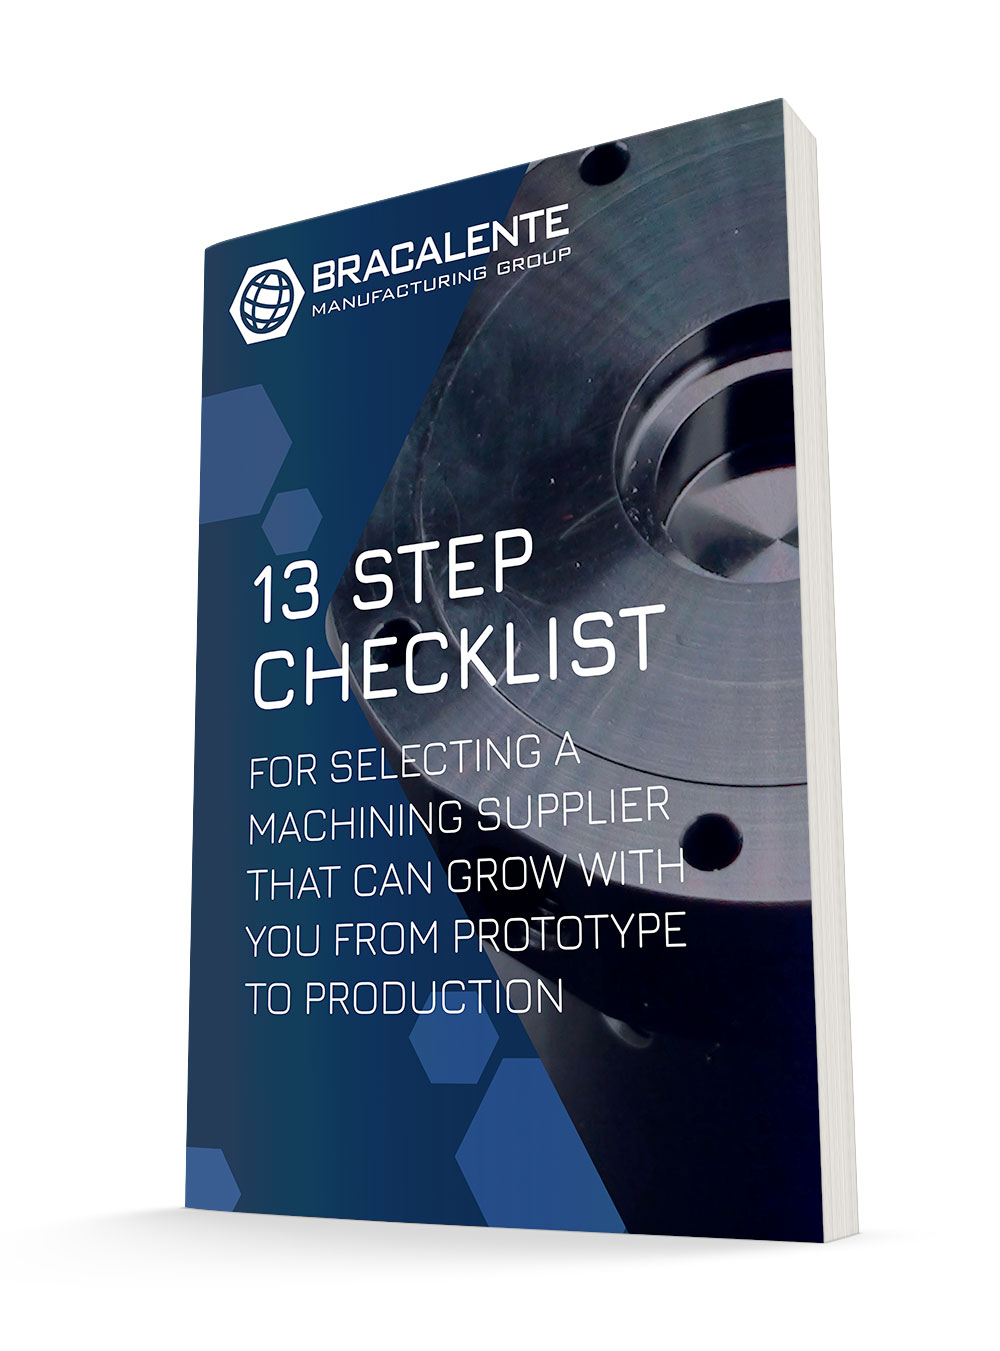 Llista de comprovació de 13 passos per seleccionar un proveïdor de mecanitzat que pugui créixer des del prototip fins a la producció